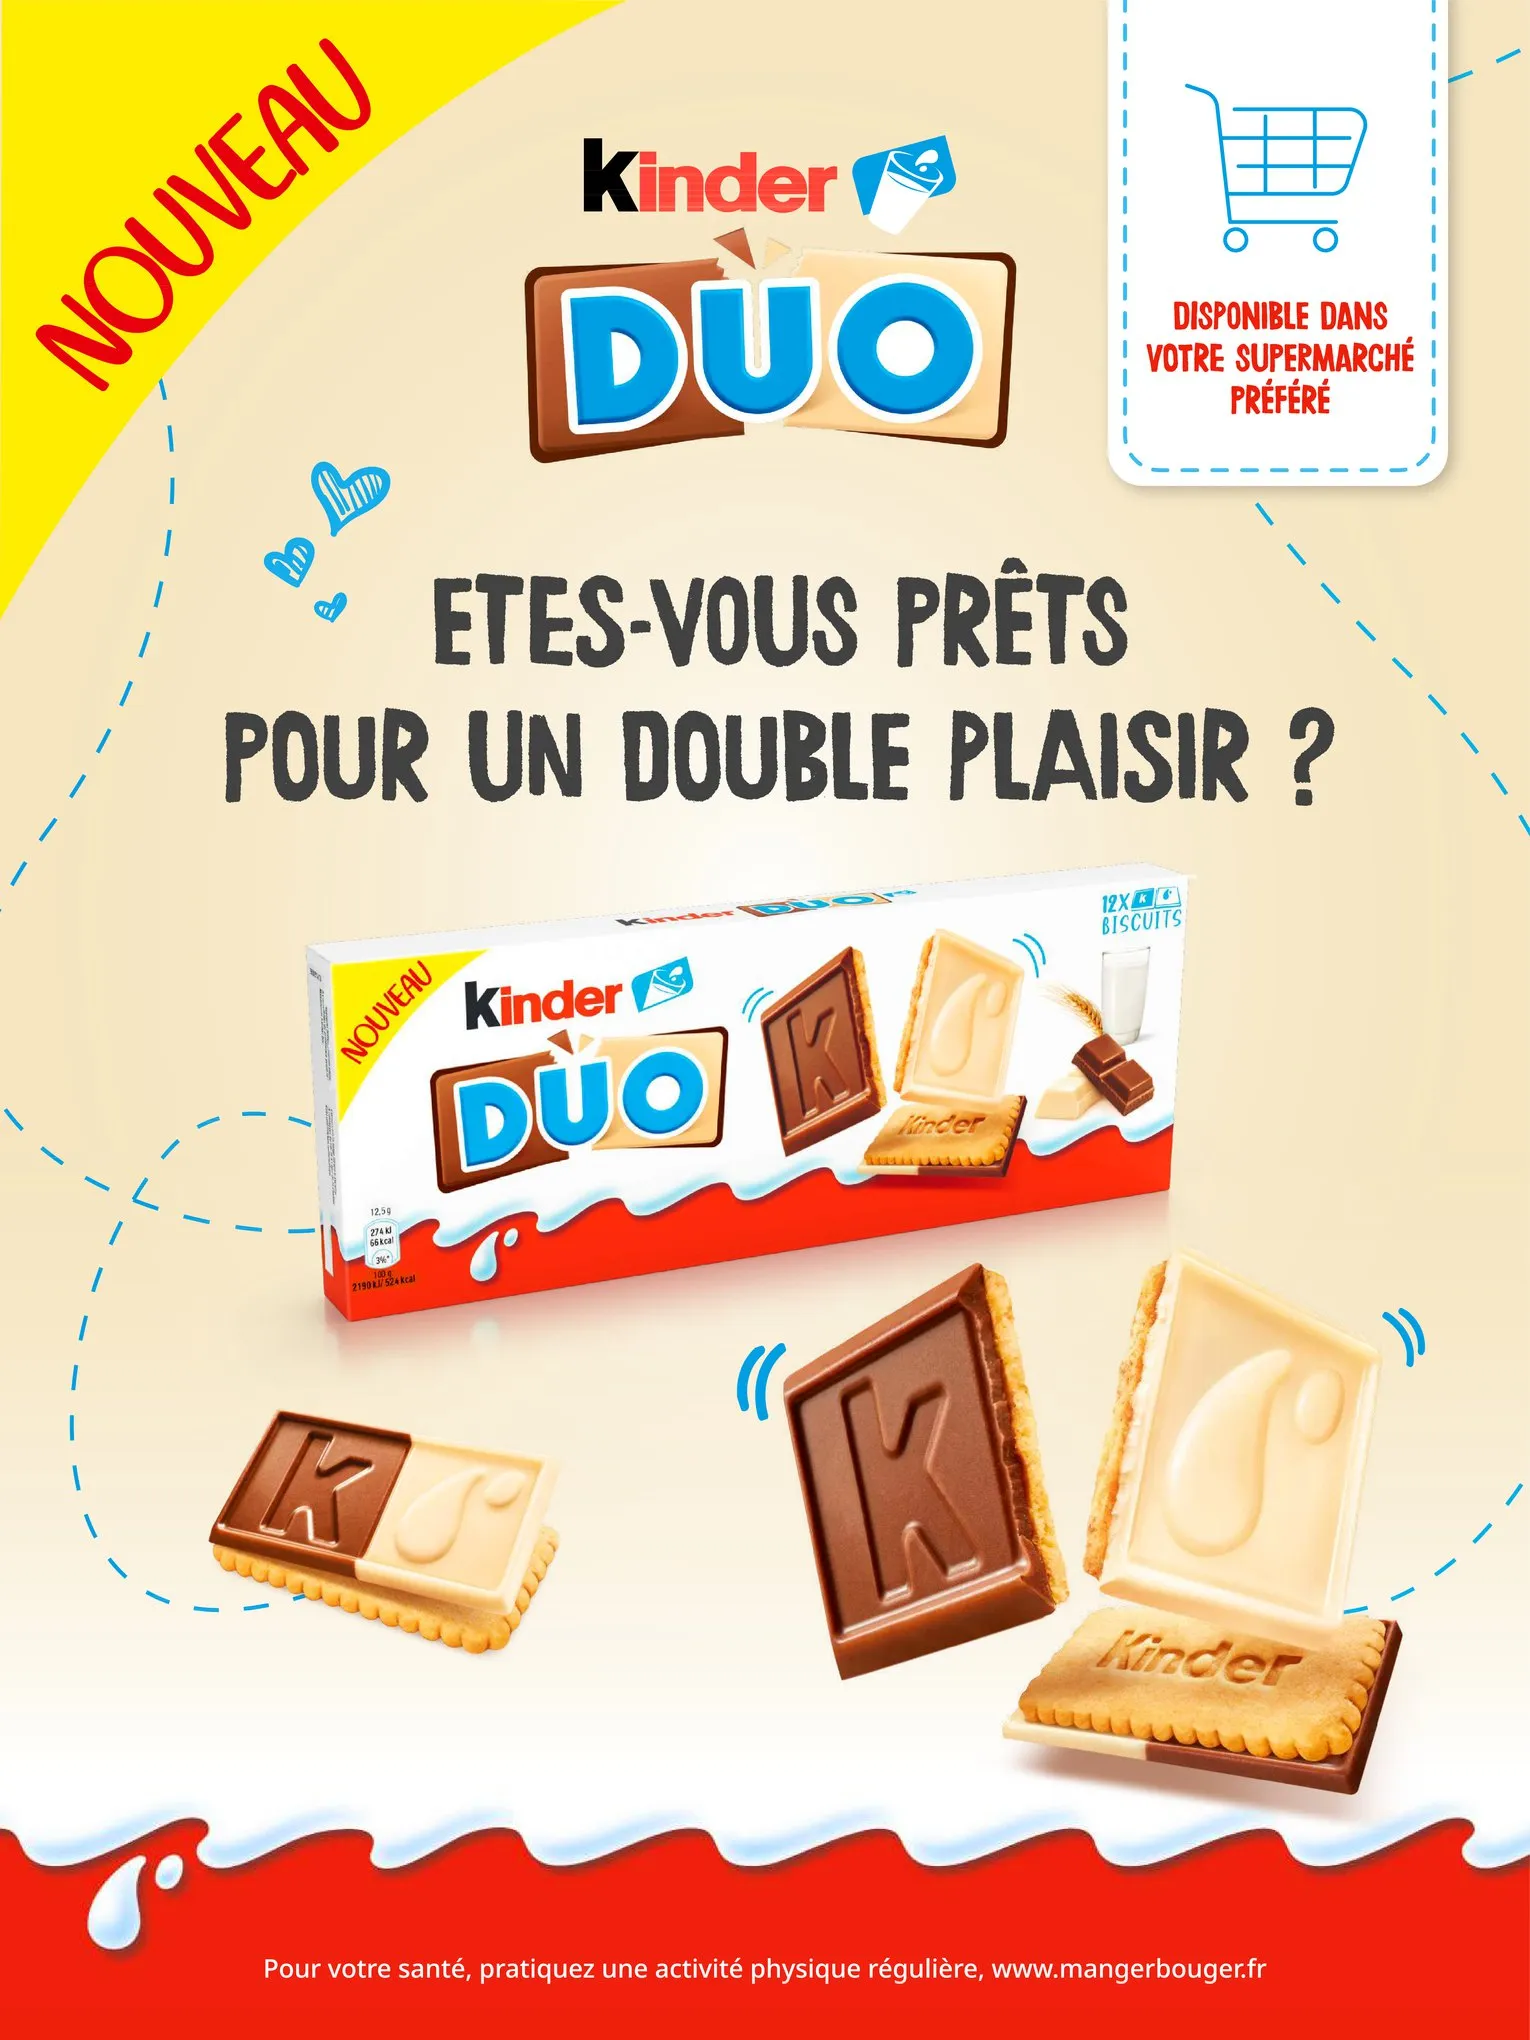 Catalogue NOUVEAU Kinder Duo, le biscuit à partager !, page 00004